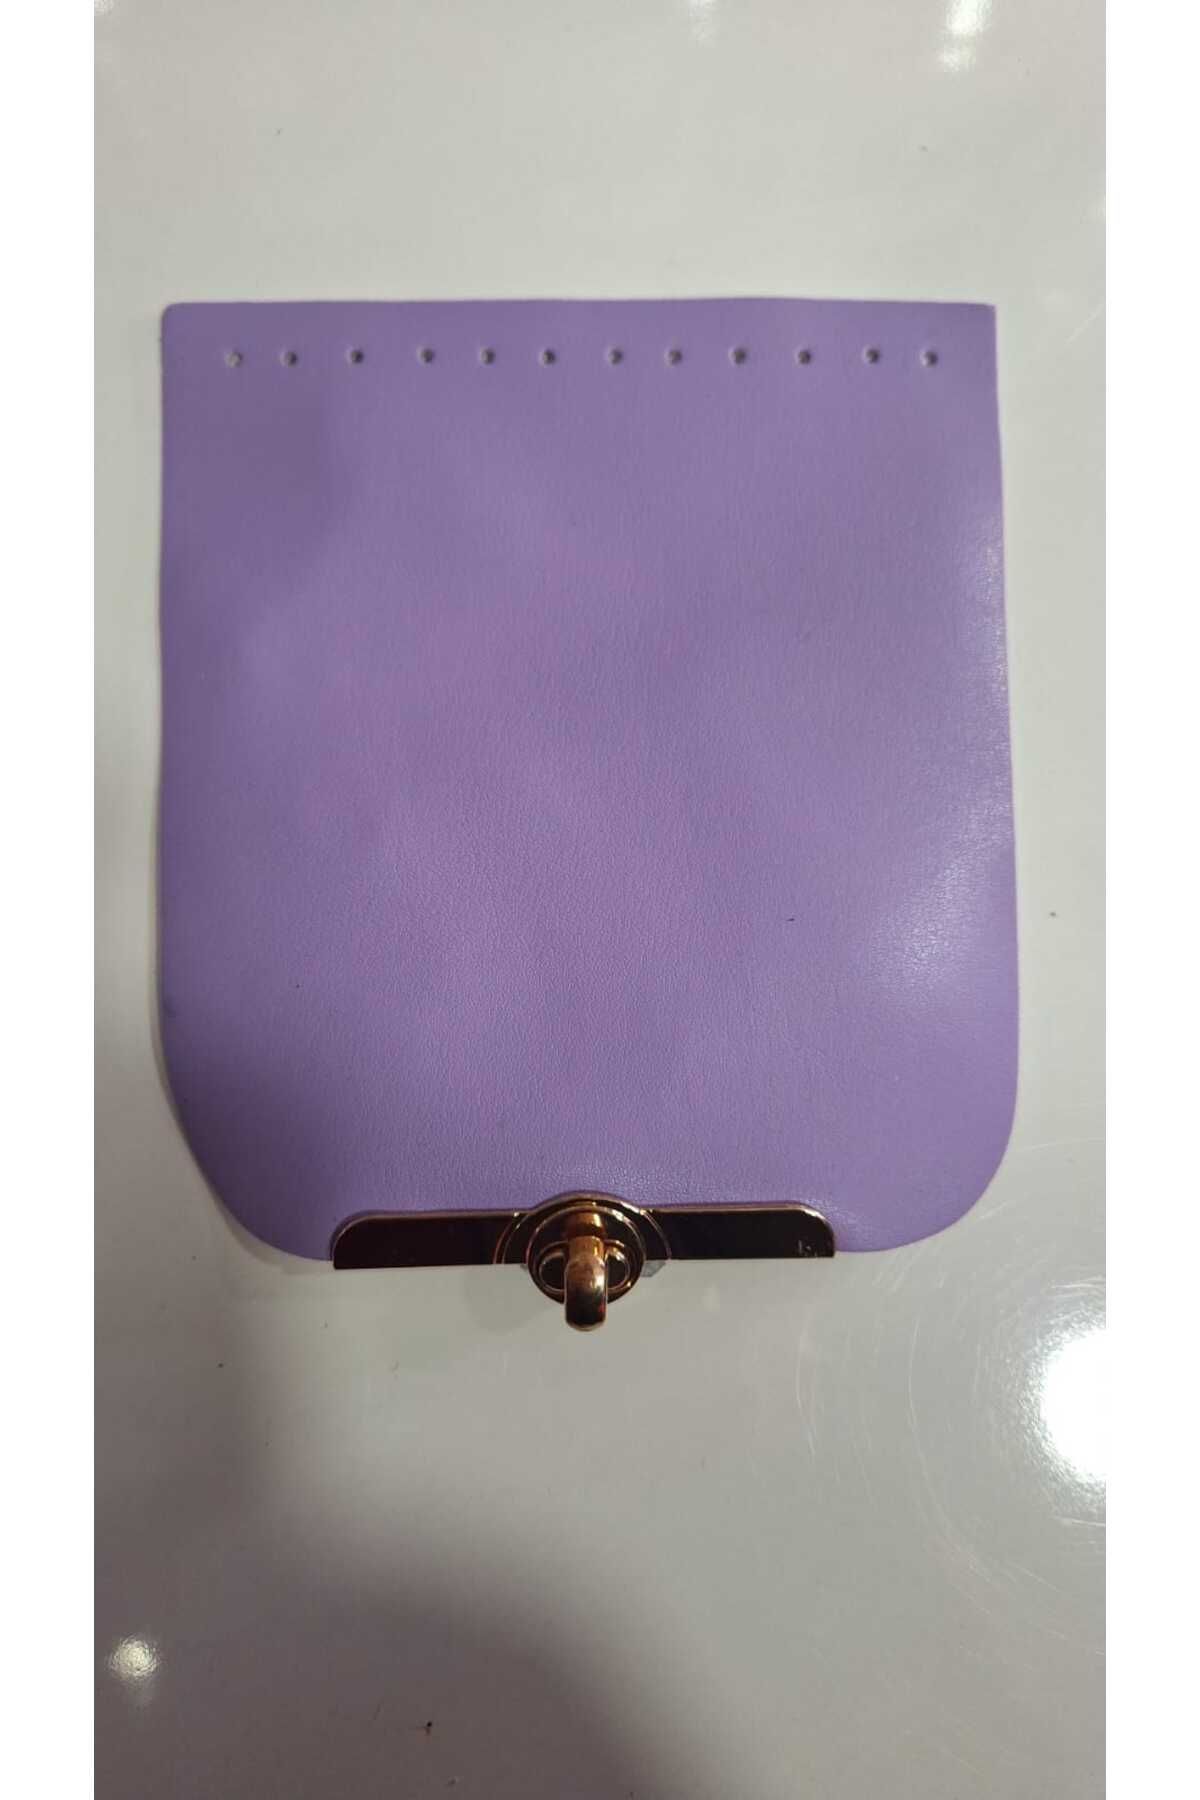 Renkli ilmekler Suni Deri Örgü Kağıt ip & Makrome Oval Zara Modeli Çanta Kapağı  (Çanta Kapağı 112cm Askı)